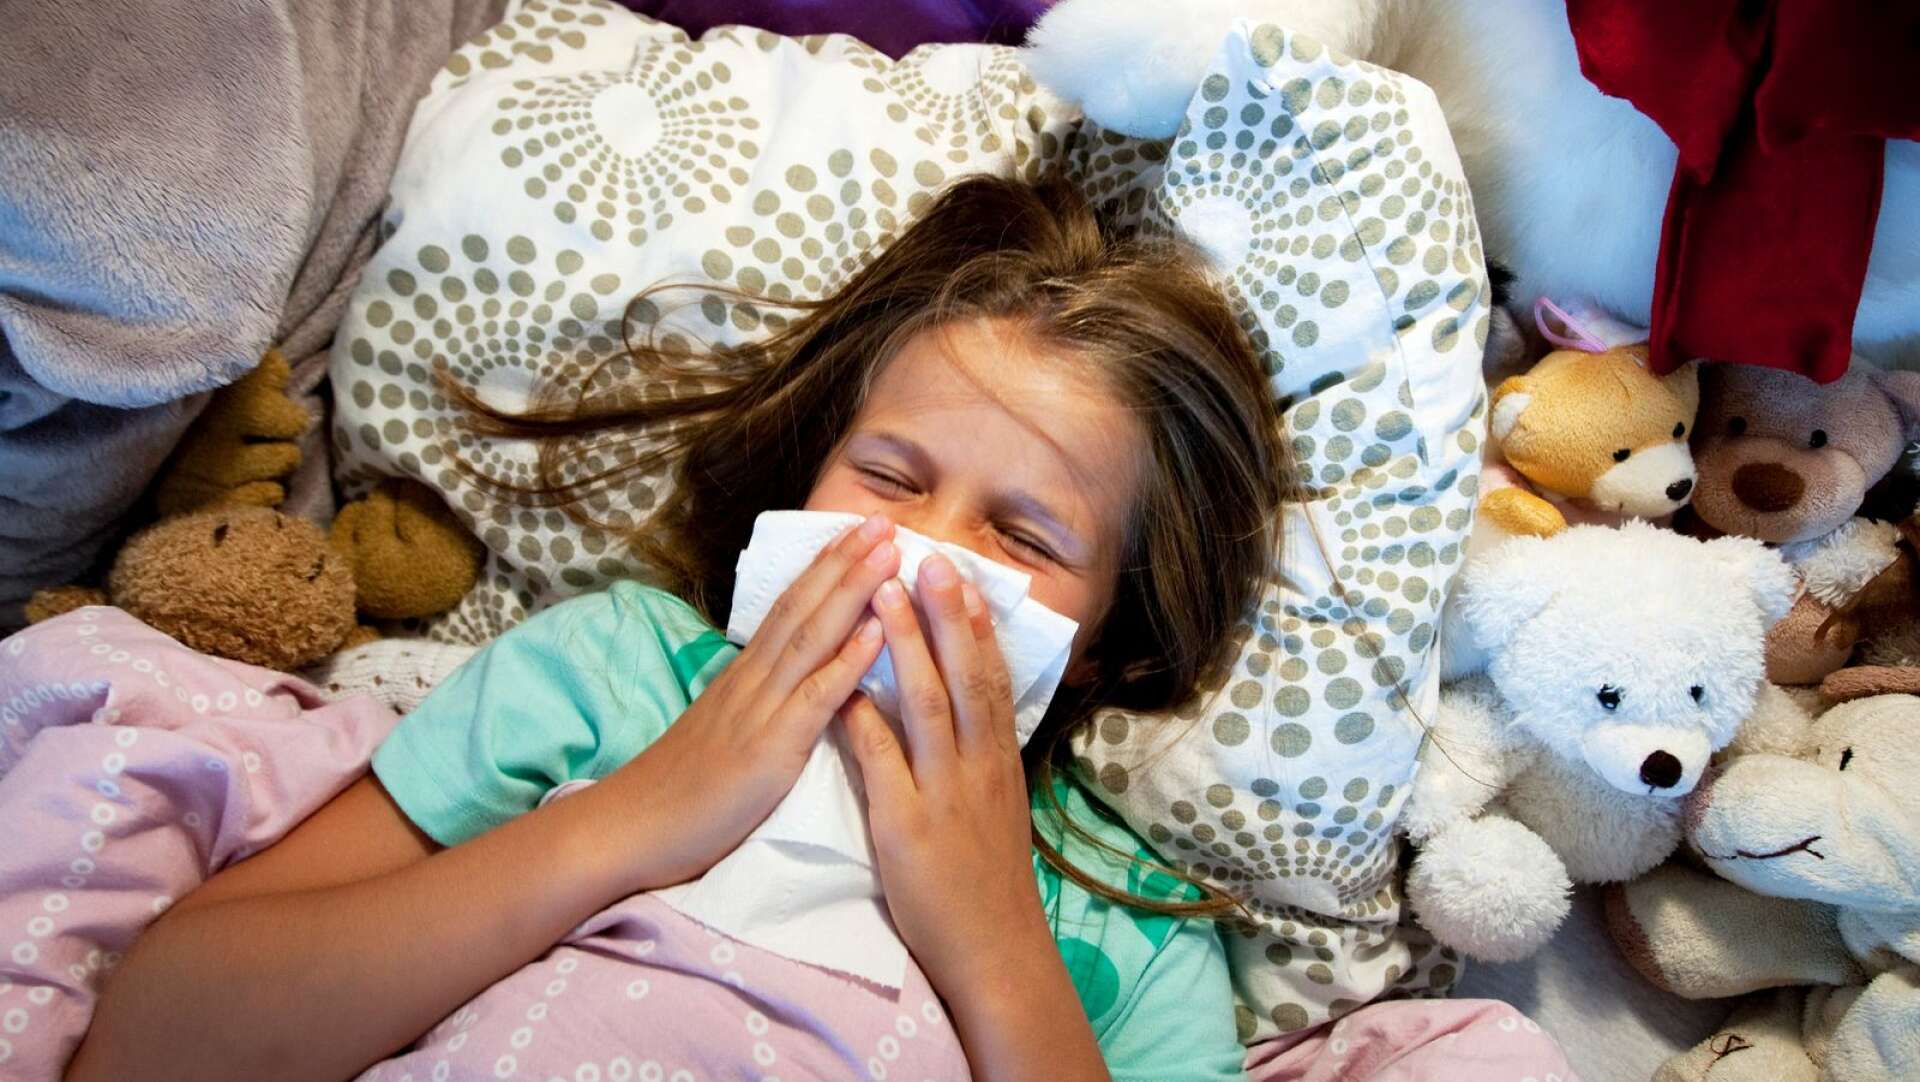 Värmland riskerar att få fler fall av influensa B, något som kan slå särskilt hårt mot yngre. Bilden är tagen i ett annat sammanhang.